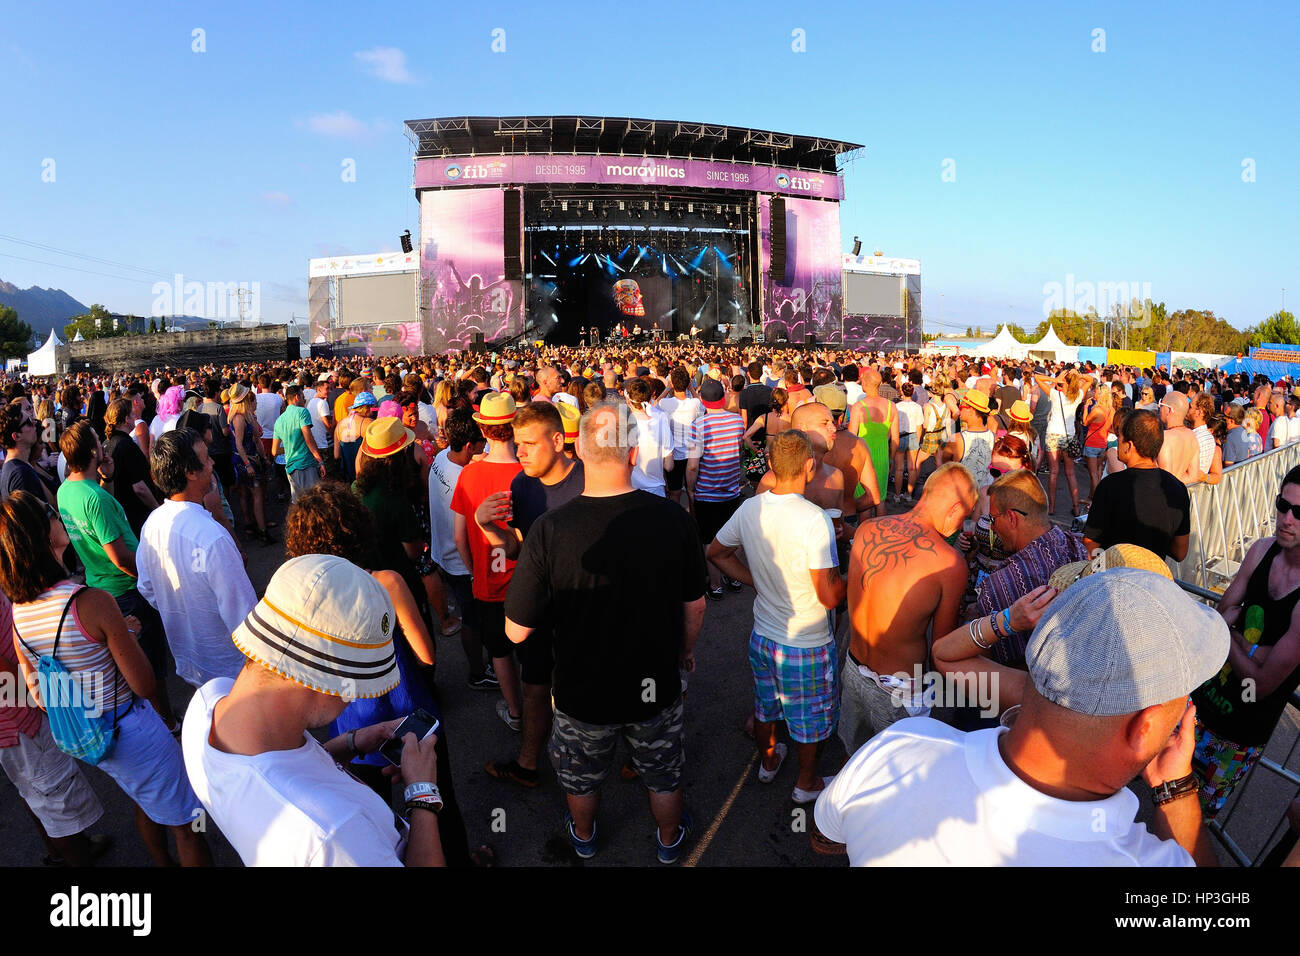 BENICASSIM, ESPAGNE - 19 juillet : foule lors d'un concert au Festival de Musique le 19 juillet 2014 à Benicassim, Espagne. Banque D'Images